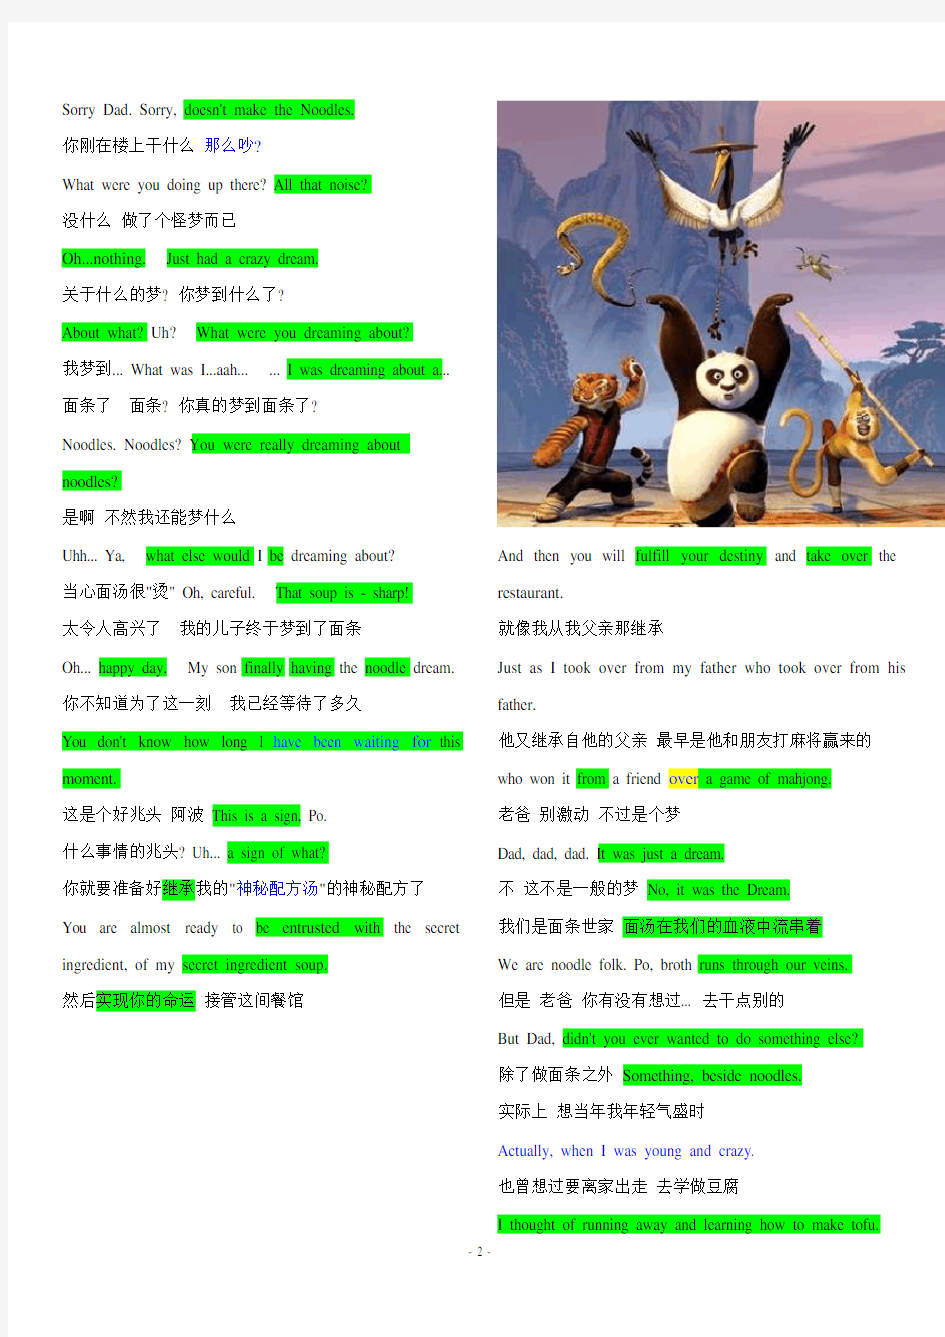 《功夫熊猫1》中英文台词对照